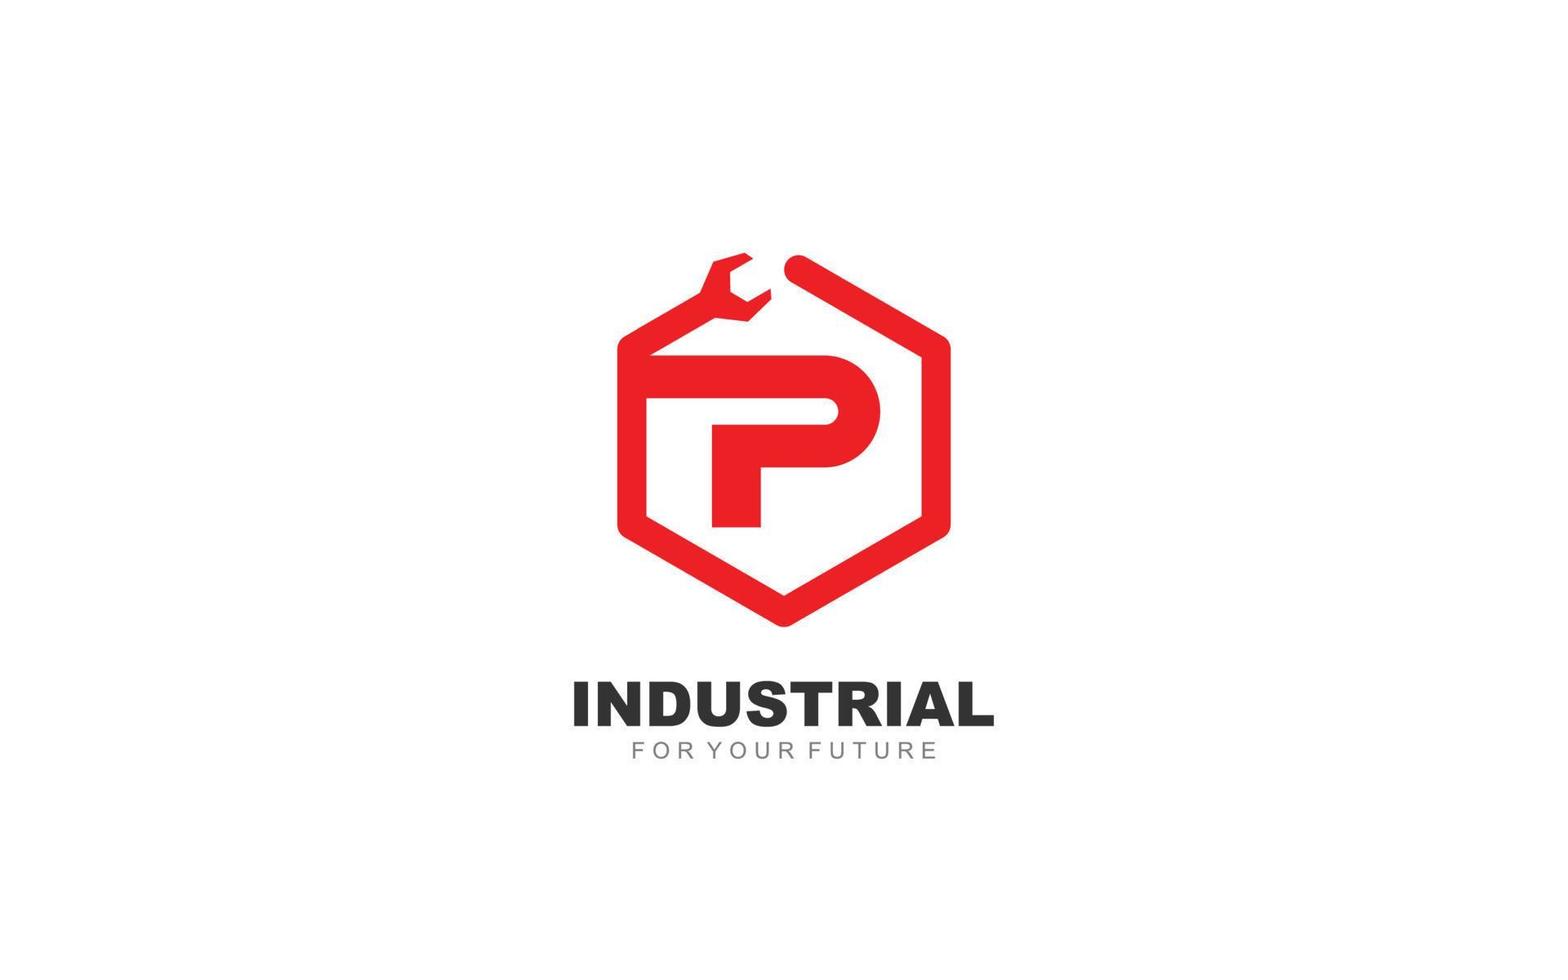 p logo loodgieter voor identiteit. brief sjabloon vector illustratie voor uw merk.